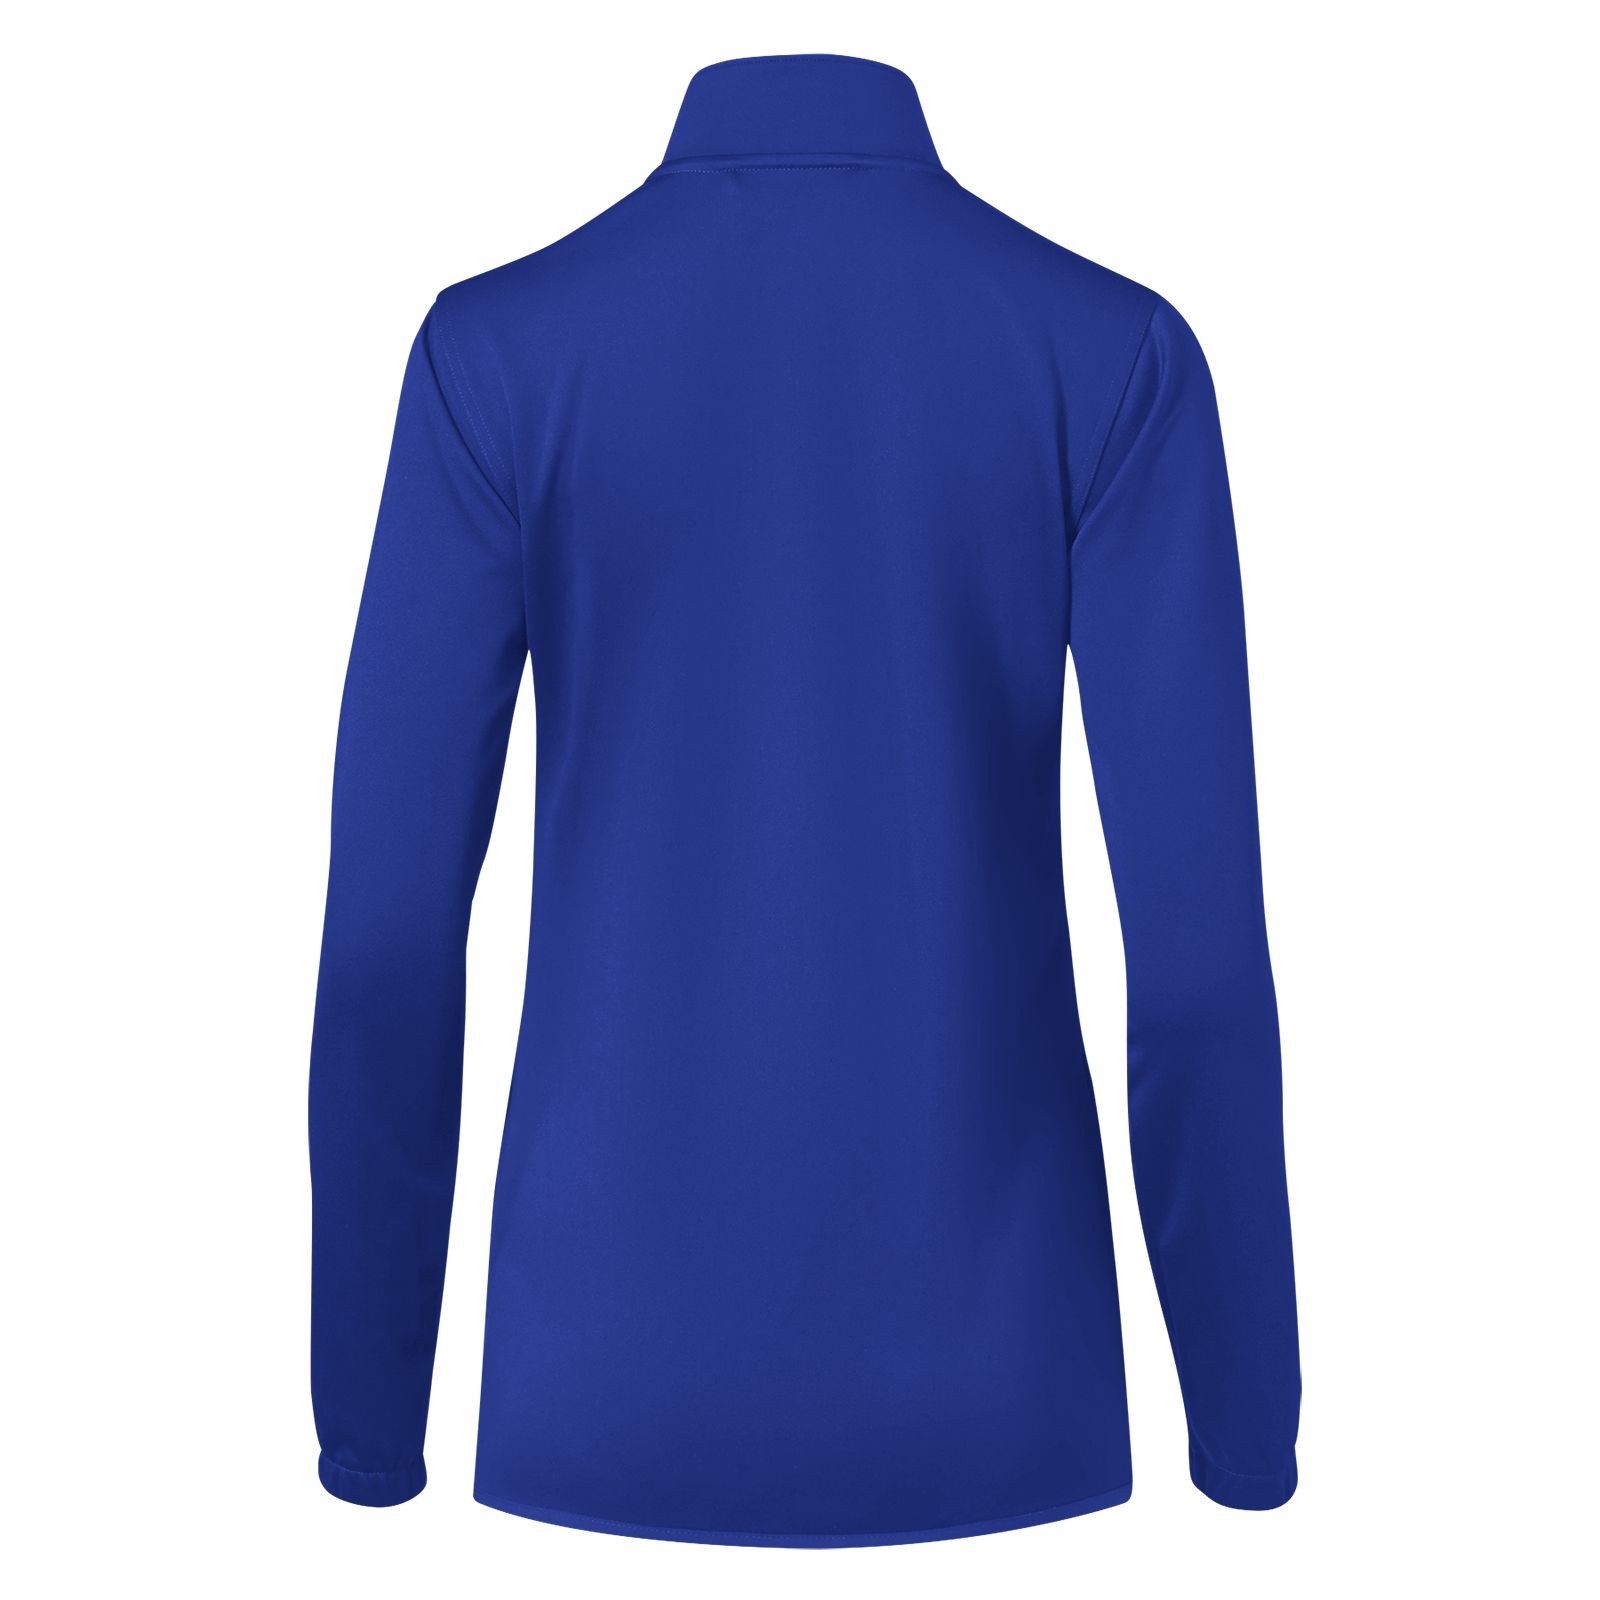 NBW Custom Knit Training Jacket, Royal Blue image number 2